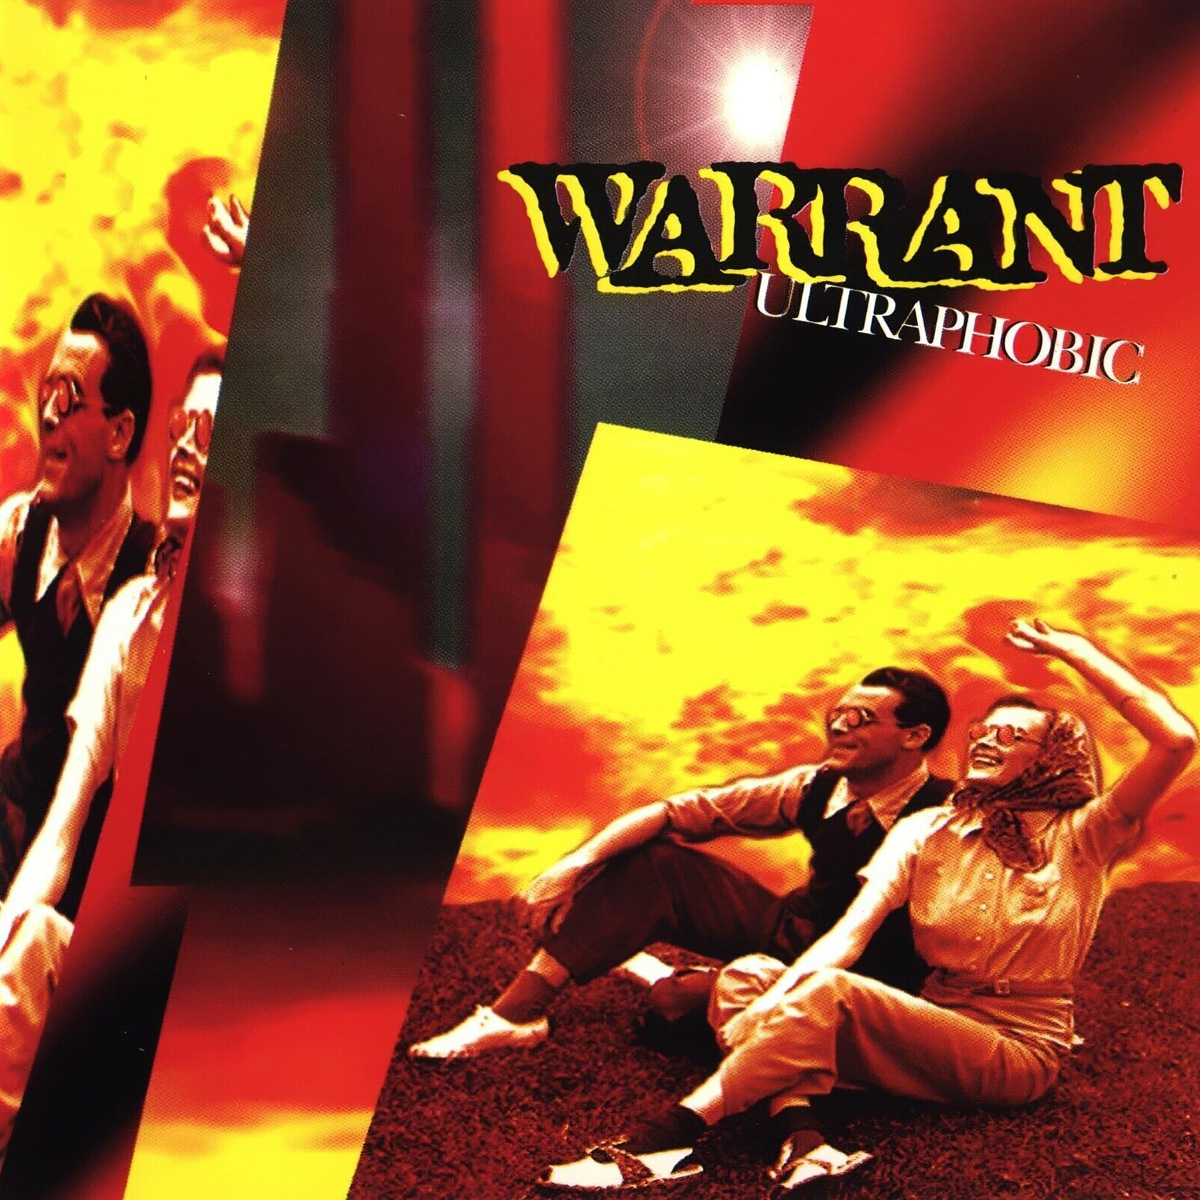 Warrant: Ultraphobic